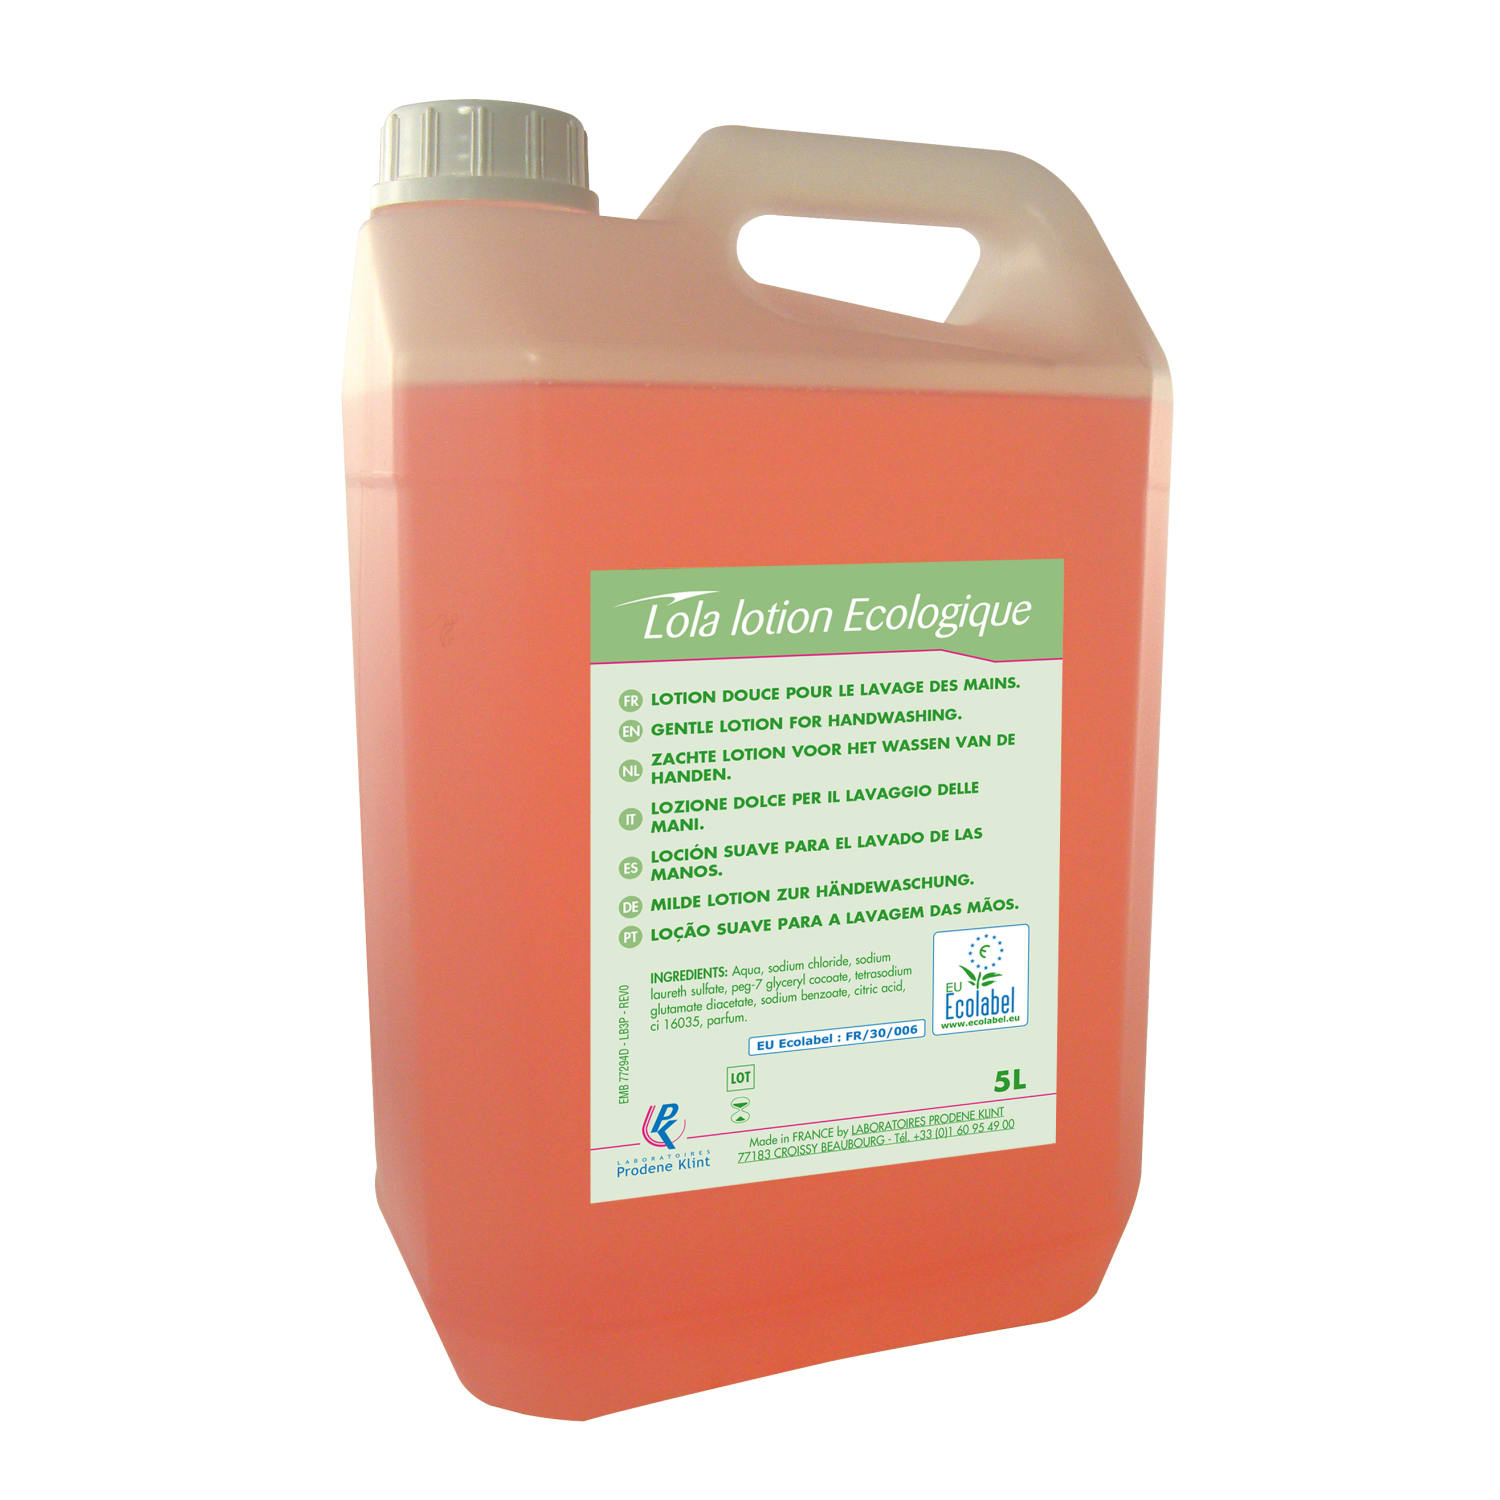 Lola lotion écologique lotion lavante certifiée Ecolabel bidon de 5L photo du produit